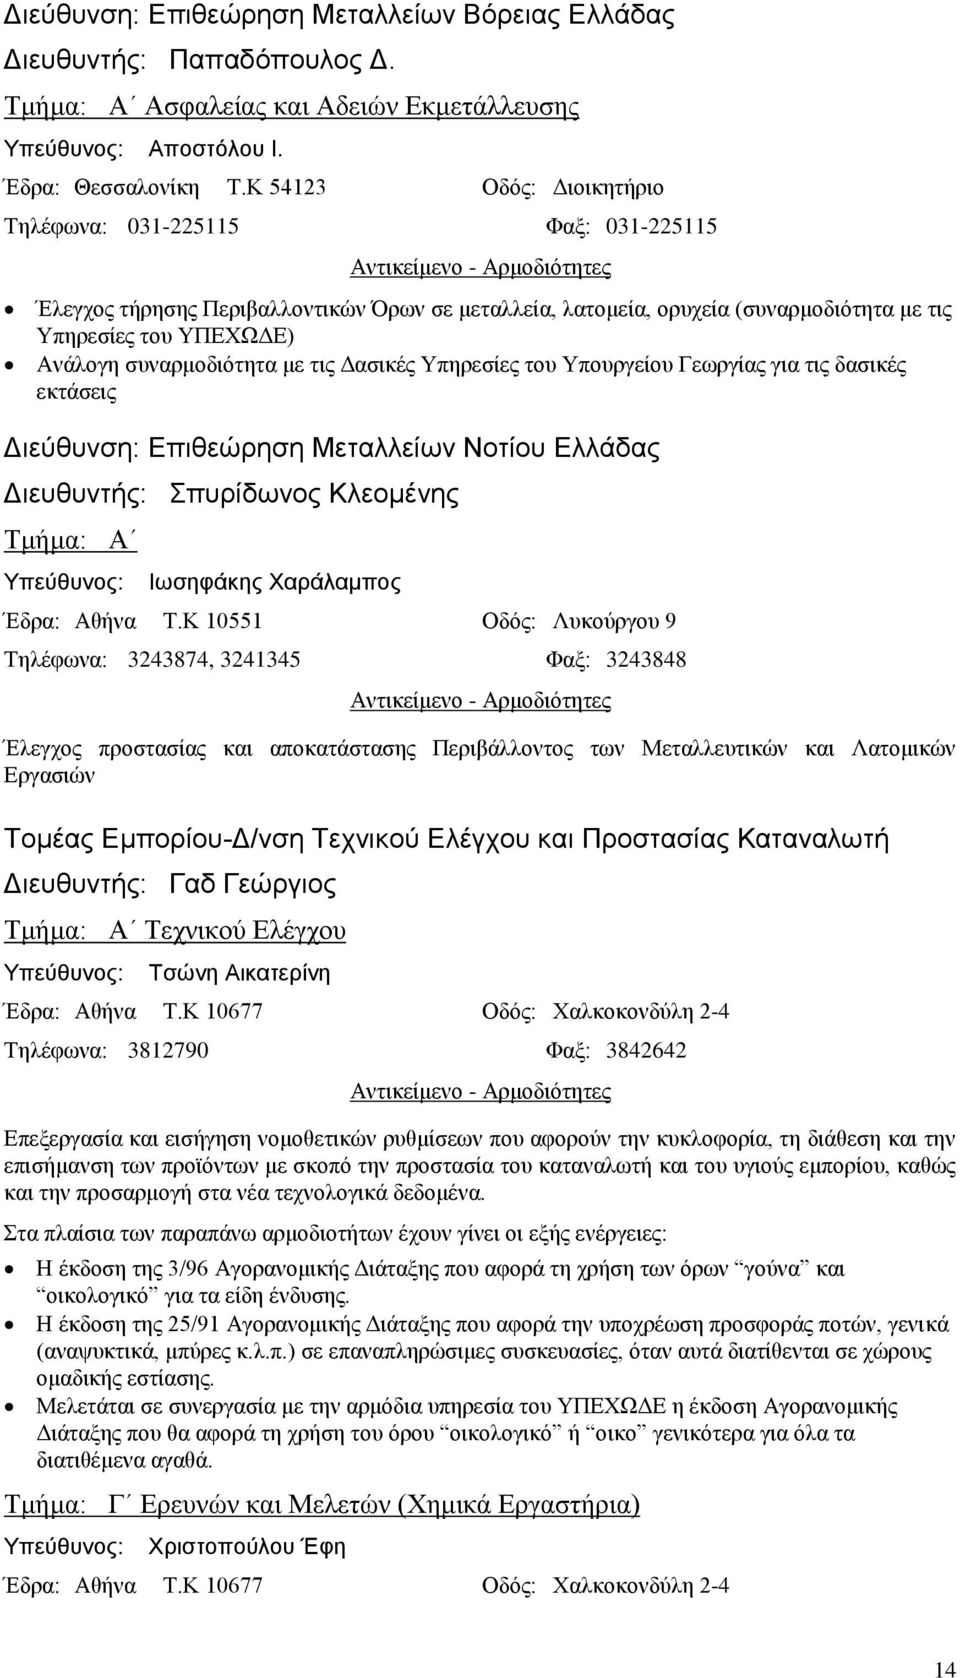 συναρμοδιότητα με τις Δασικές Υπηρεσίες του Υπουργείου Γεωργίας για τις δασικές εκτάσεις Διεύθυνση: Επιθεώρηση Μεταλλείων Νοτίου Ελλάδας Διευθυντής: Σπυρίδωνος Κλεομένης Τμήμα: Α Ιωσηφάκης Χαράλαμπος